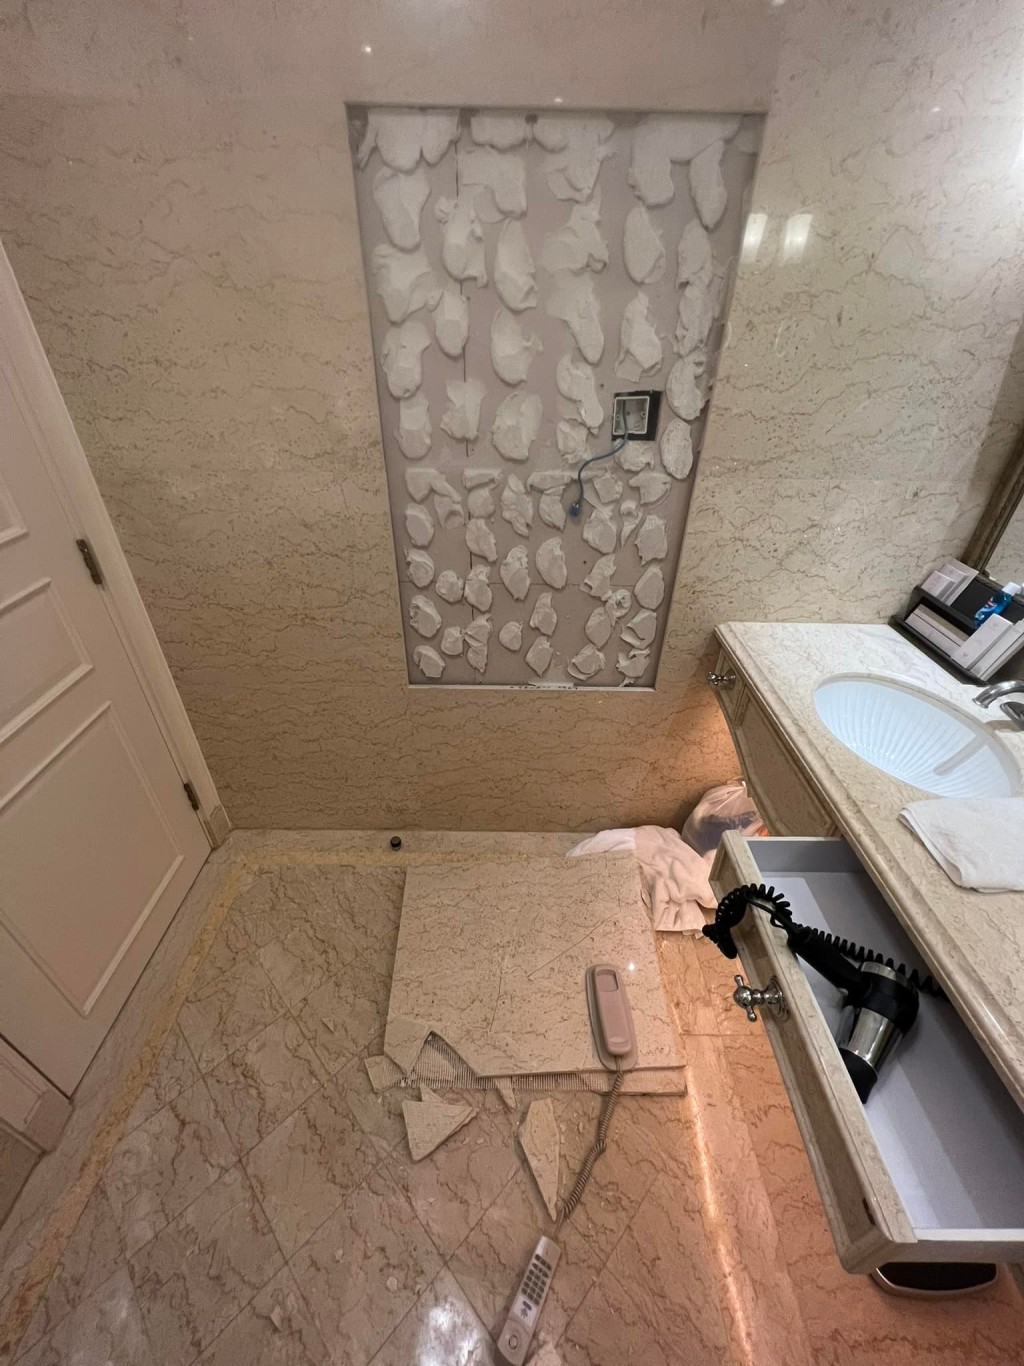 酒店浴室墙身大幅崩塌。「澳门高登起底组」网民图片